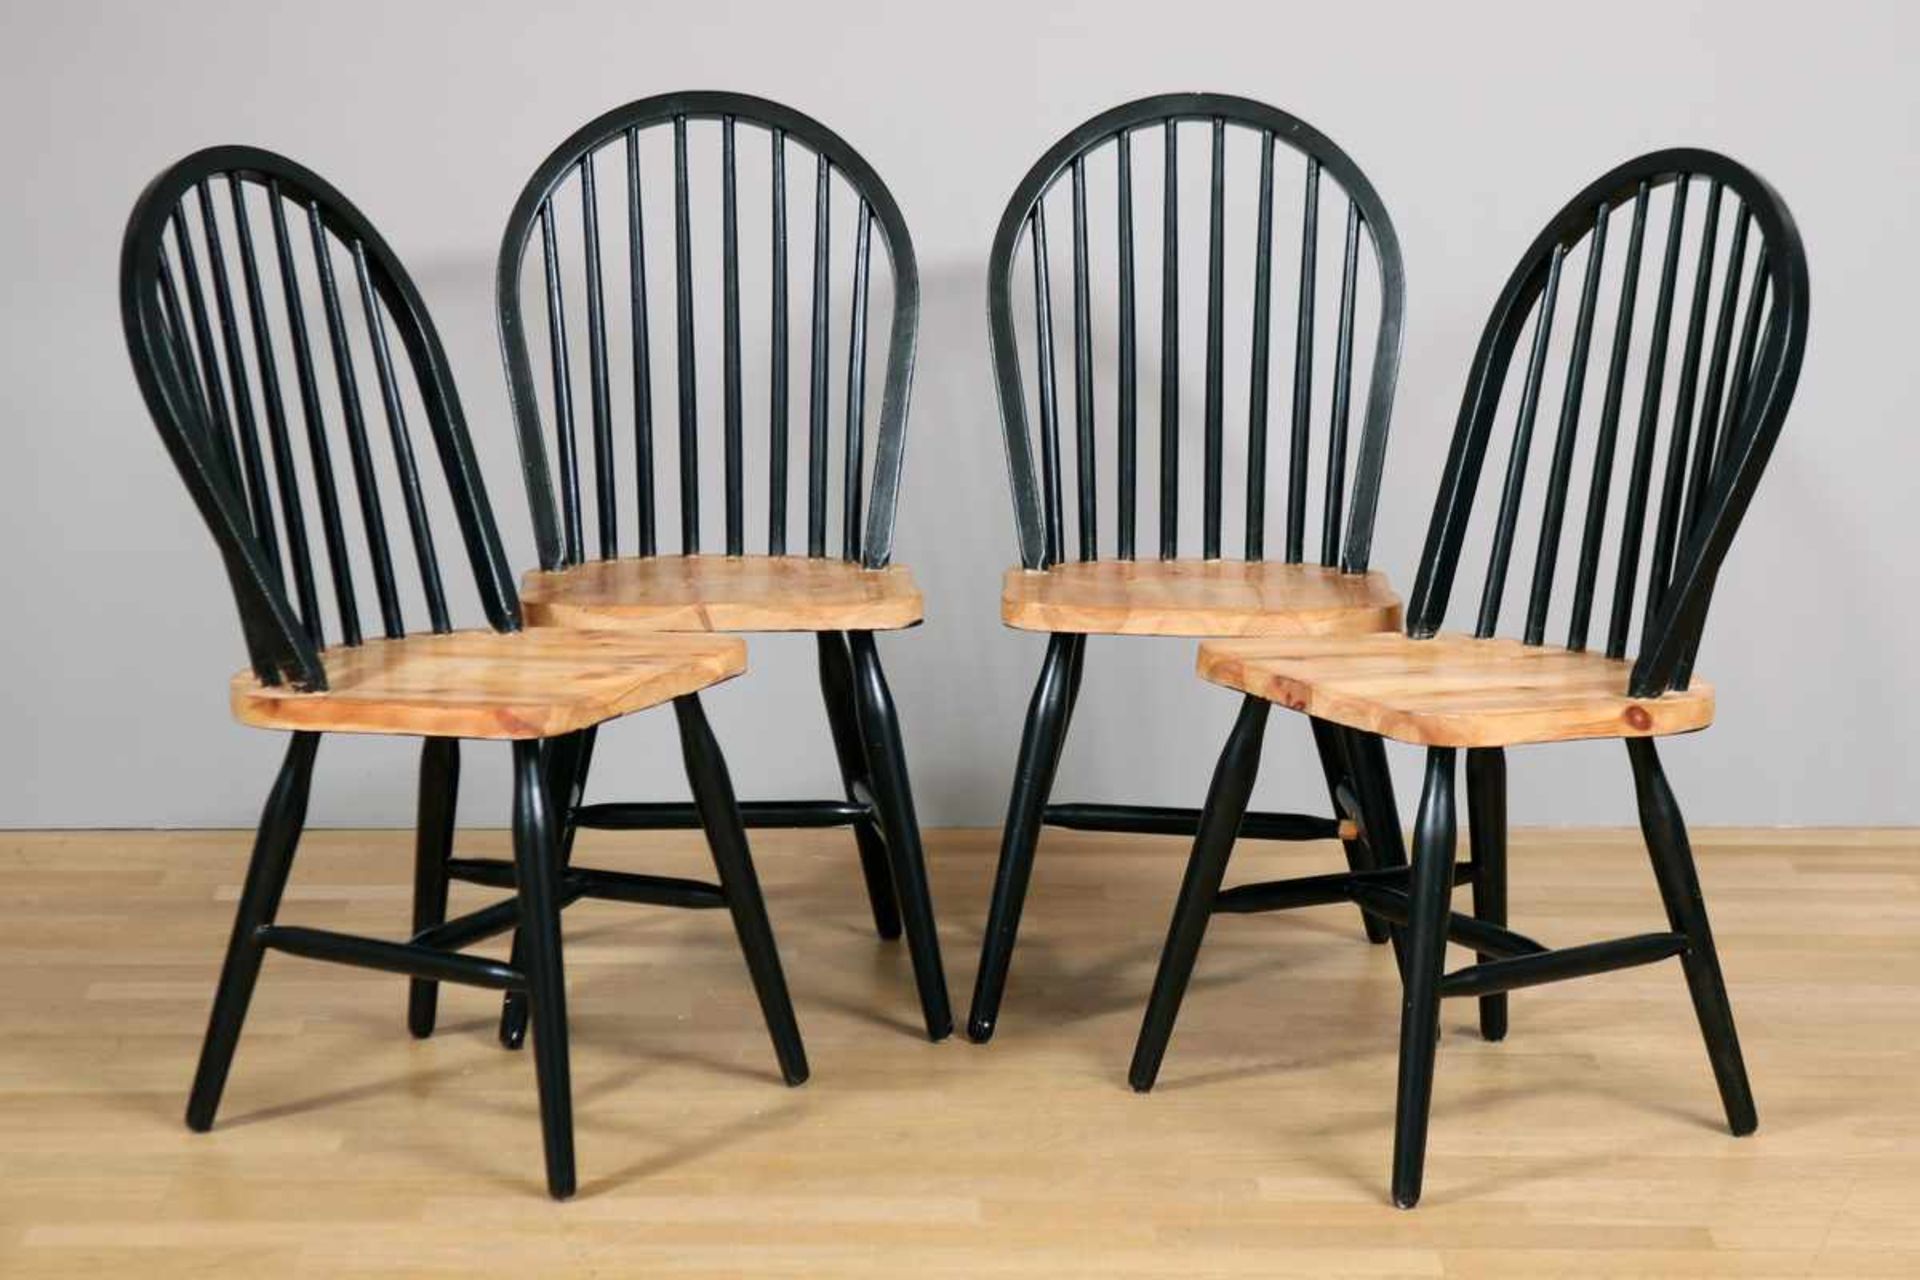 4 Stühle Skandinavien, um 1950/60, unbekannter Hersteller, Sitz Kiefernholz, gemuldet, schwarz